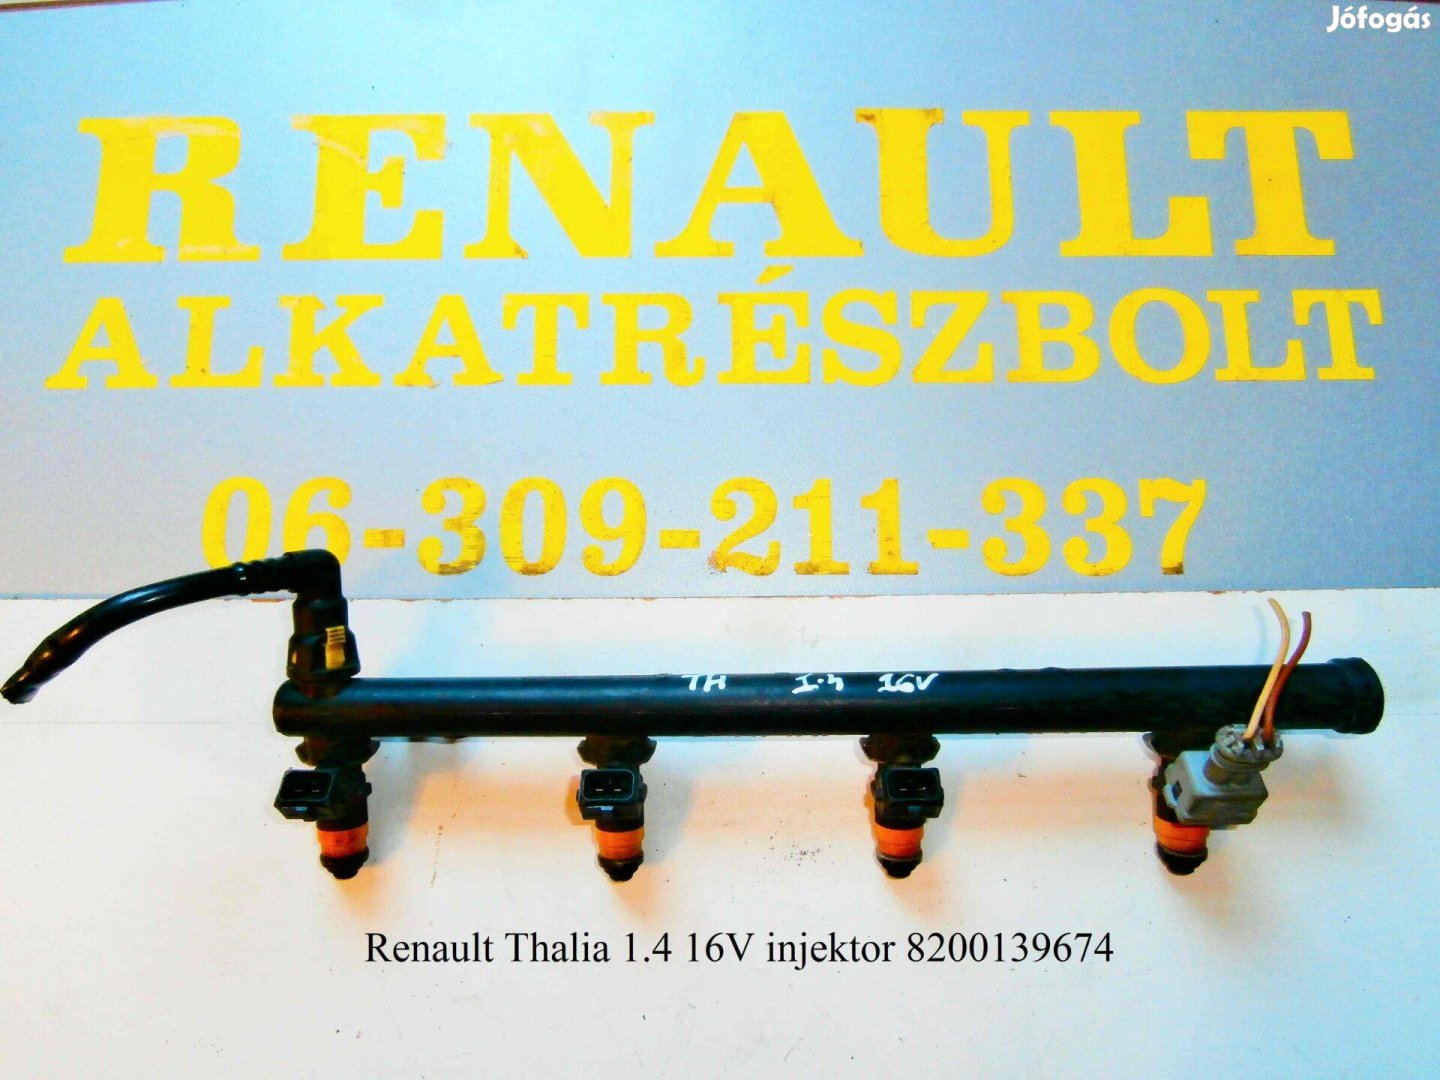 Renault Thalia 1.4 16V injektor 8200139674